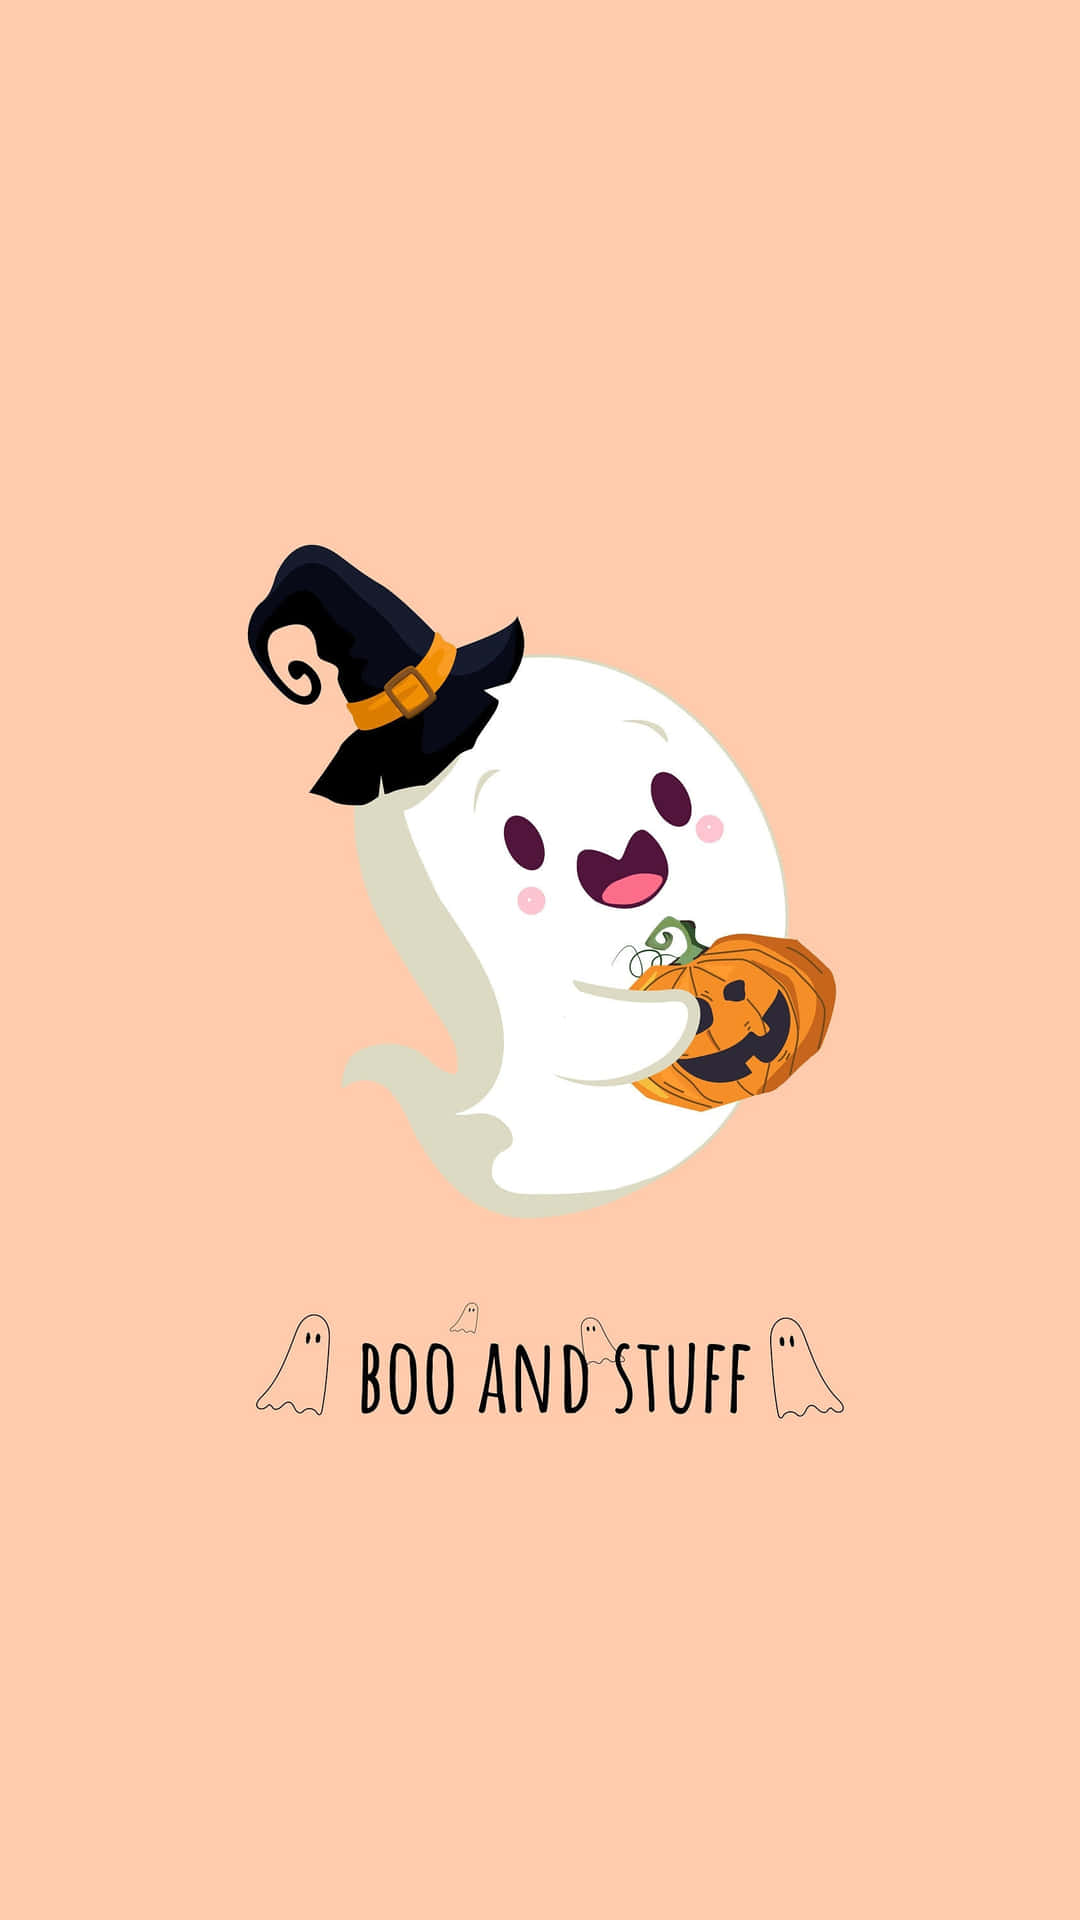 Bildshopping För Halloween-dräkter På Boo And Stuff Wallpaper